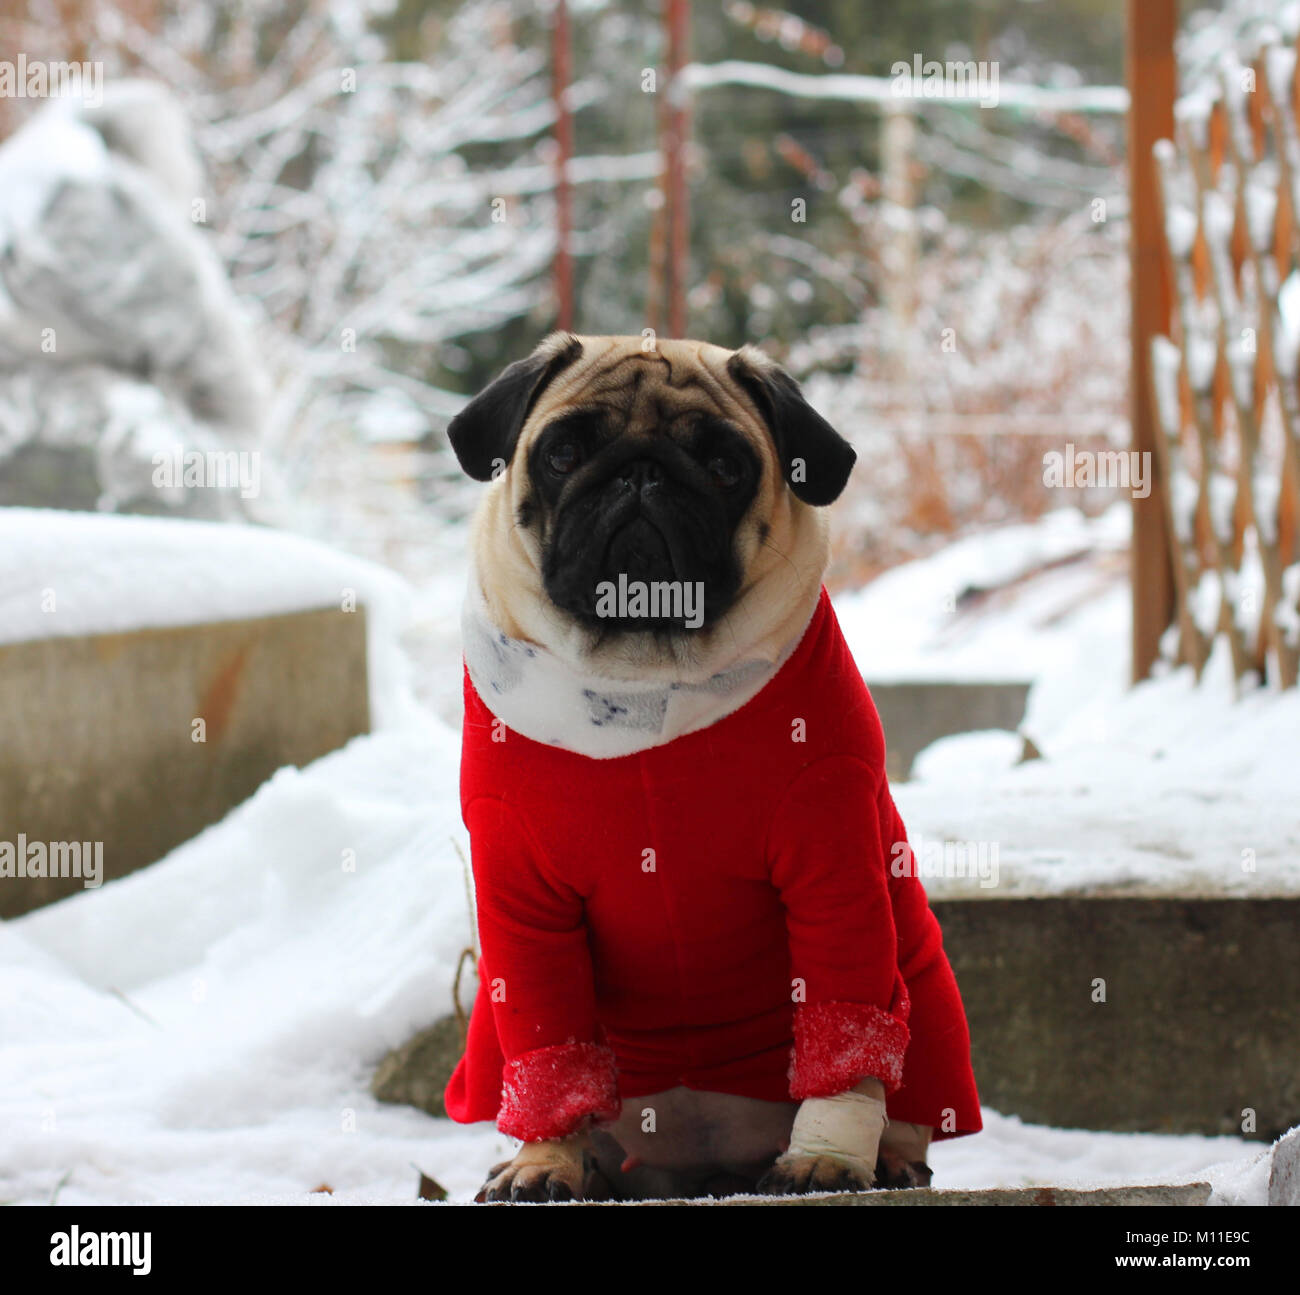 Schön traurig Mops Hund im roten Pullover auf weißem Schnee Stockfotografie  - Alamy